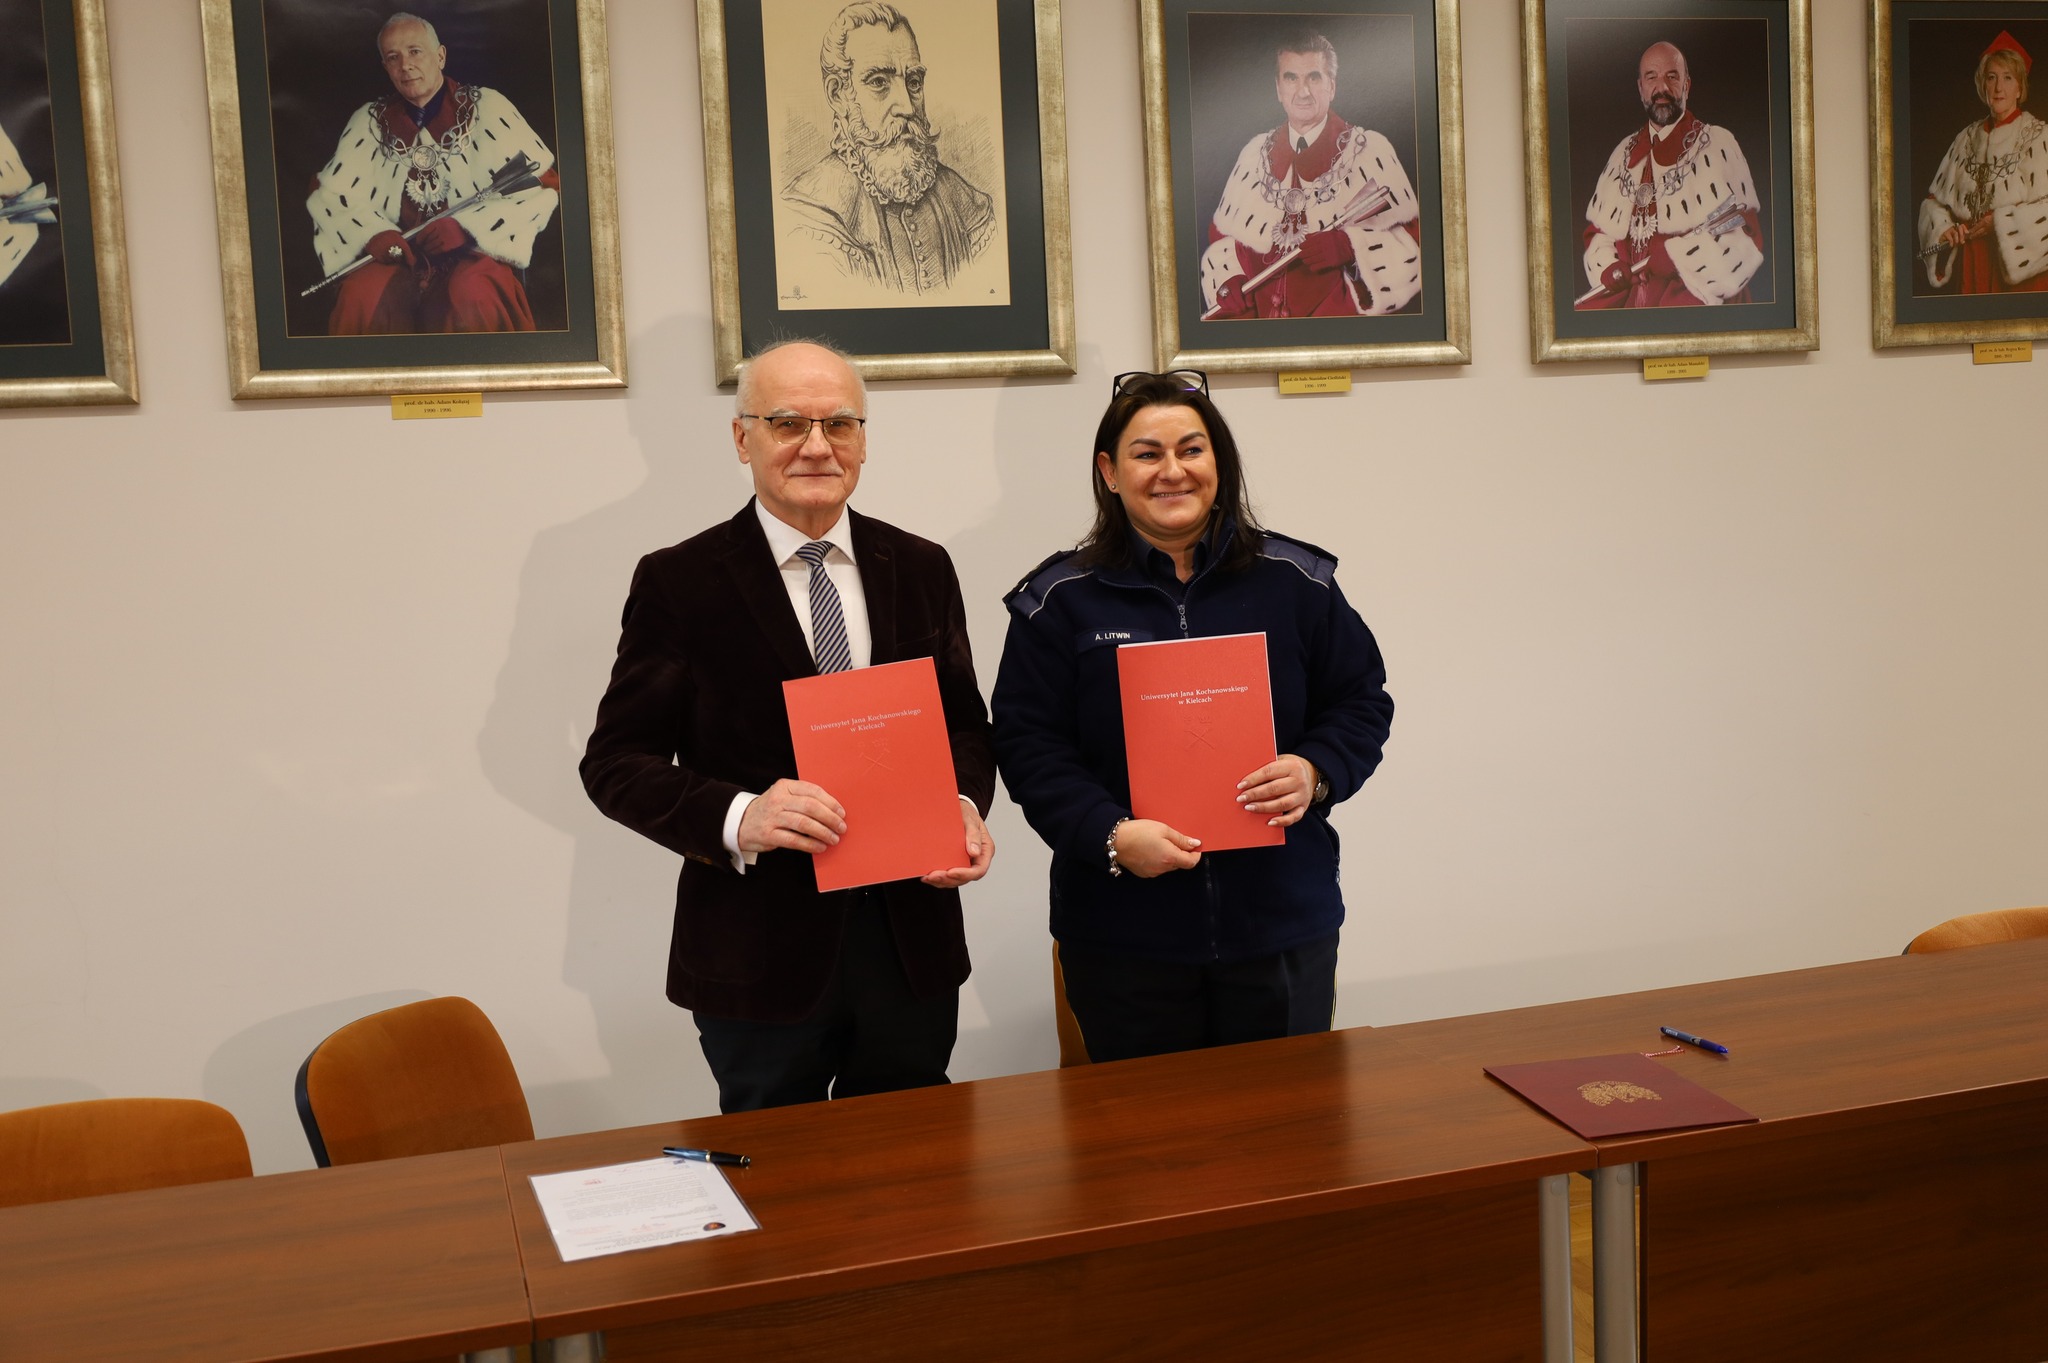 Umowę o współpracy pomiędzy UJK i Strażą Miejską prezentują prof. dr hab. Stanisław Głuszek oraz Aneta Litwin.